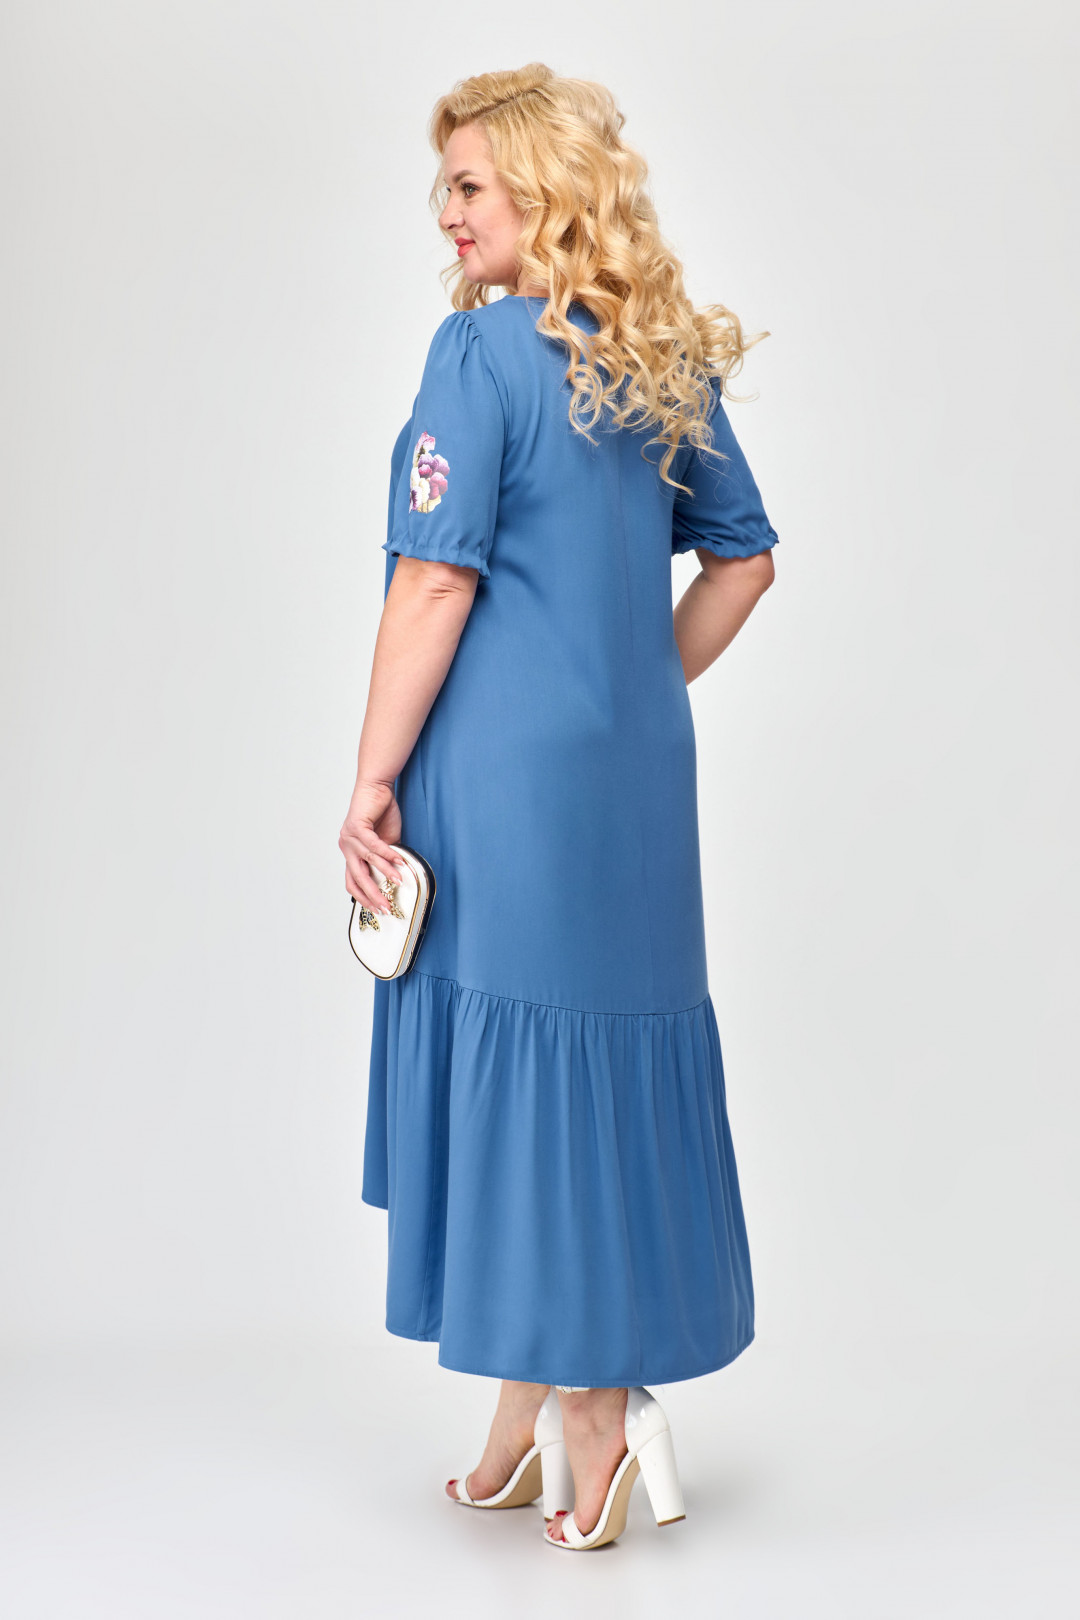 Платье ALGRANDA (Новелла Шарм) A3730-4-4-с